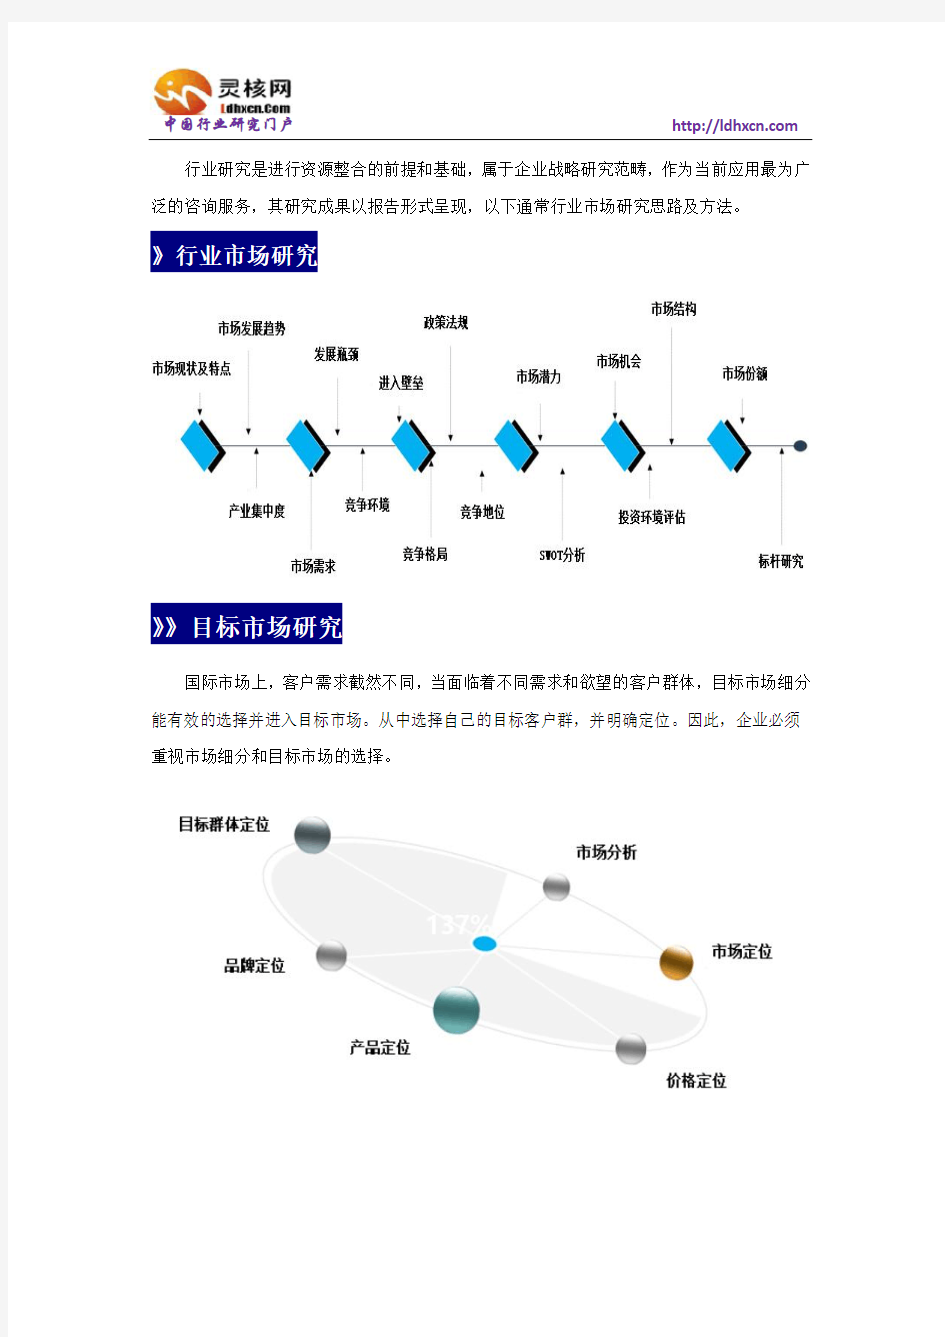 中国洗发水行业市场分析与发展趋势研究报告-灵核网